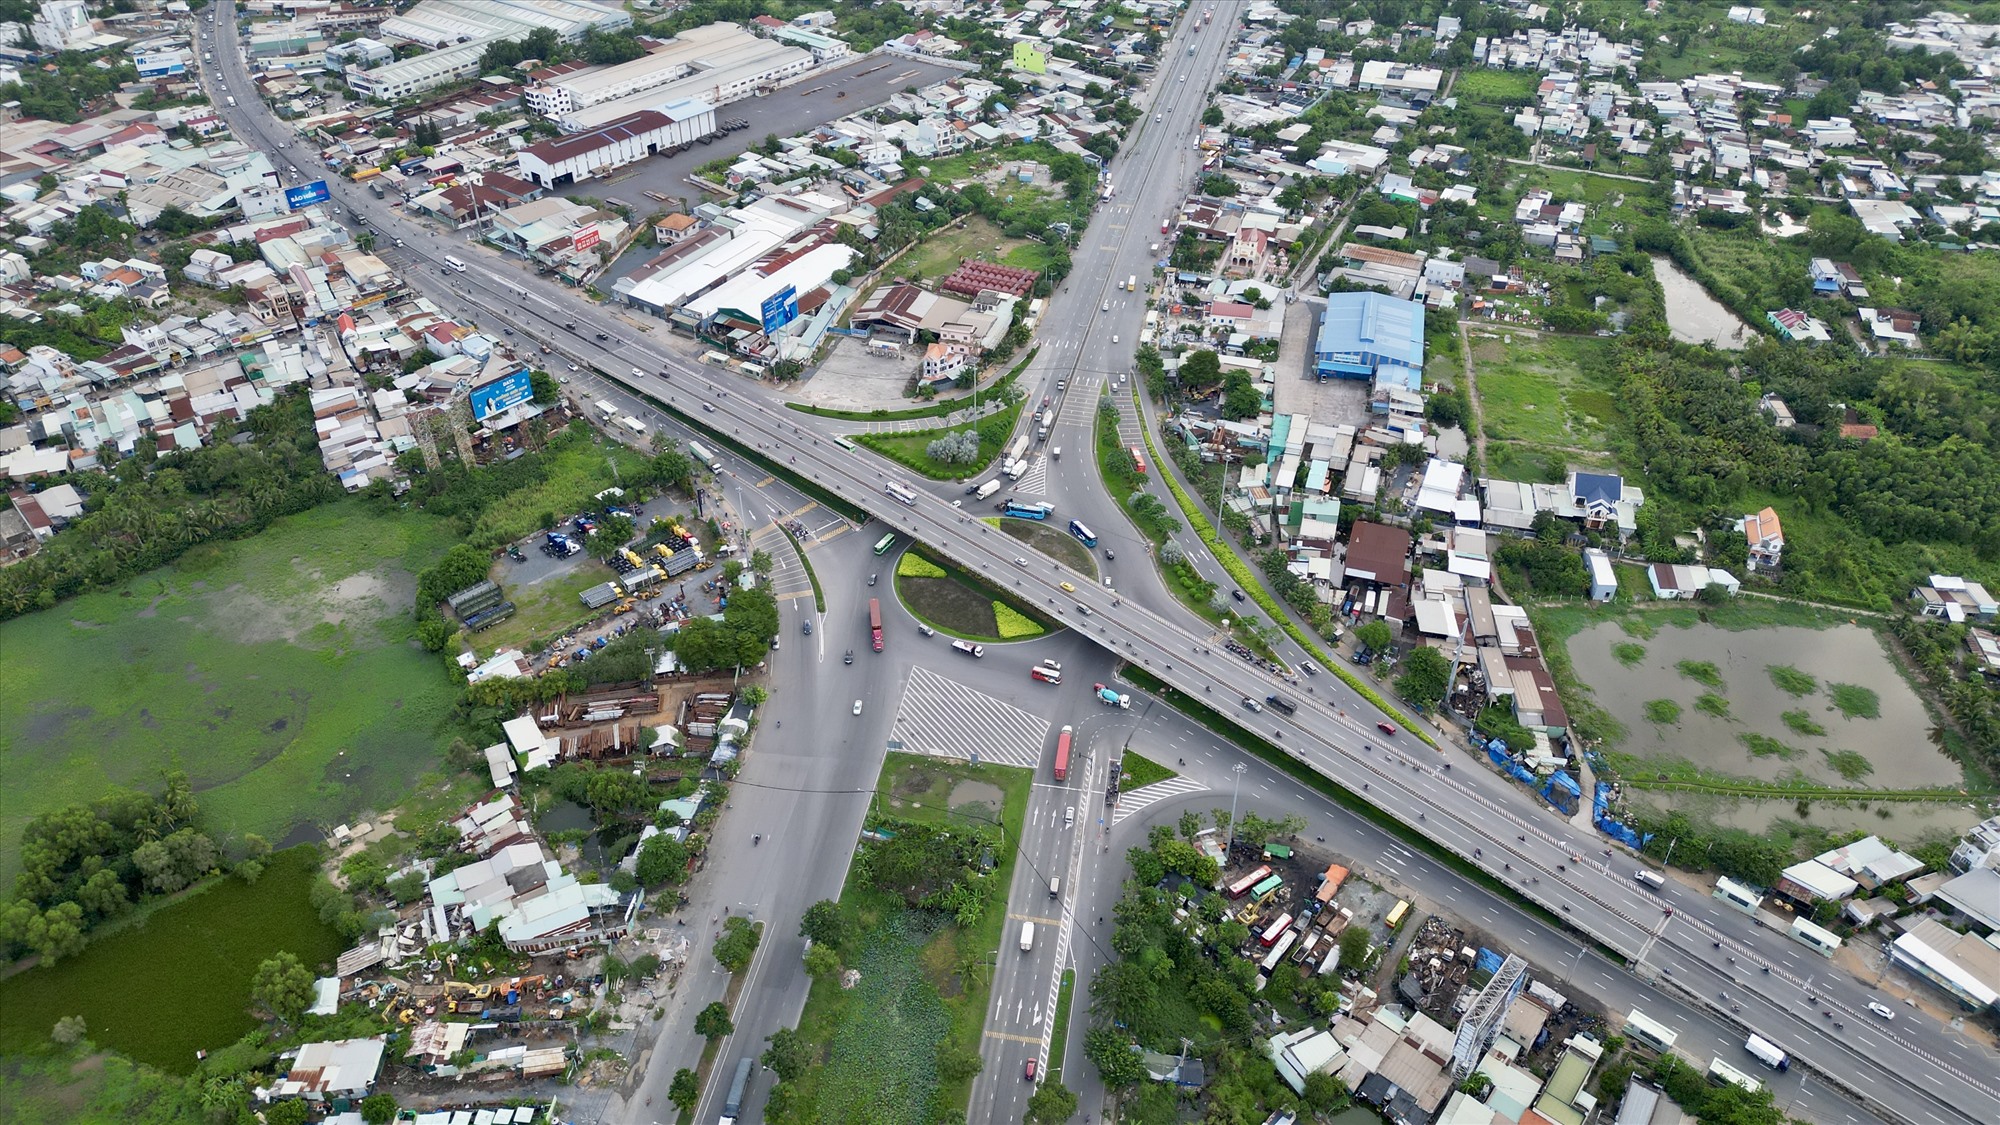 Đường Nguyễn Văn Linh dài 17,8 km, nối từ Quận 7 đến quốc lộ 1 (đoạn đi qua huyện Bình Chánh), kết nối với đường dẫn cao tốc TPHCM - Trung Lương. Đây là đại lộ được quy hoạch lộ giới 120 m, 10 làn xe, được xem là một trong những con đường có cảnh quan đẹp của TPHCM.